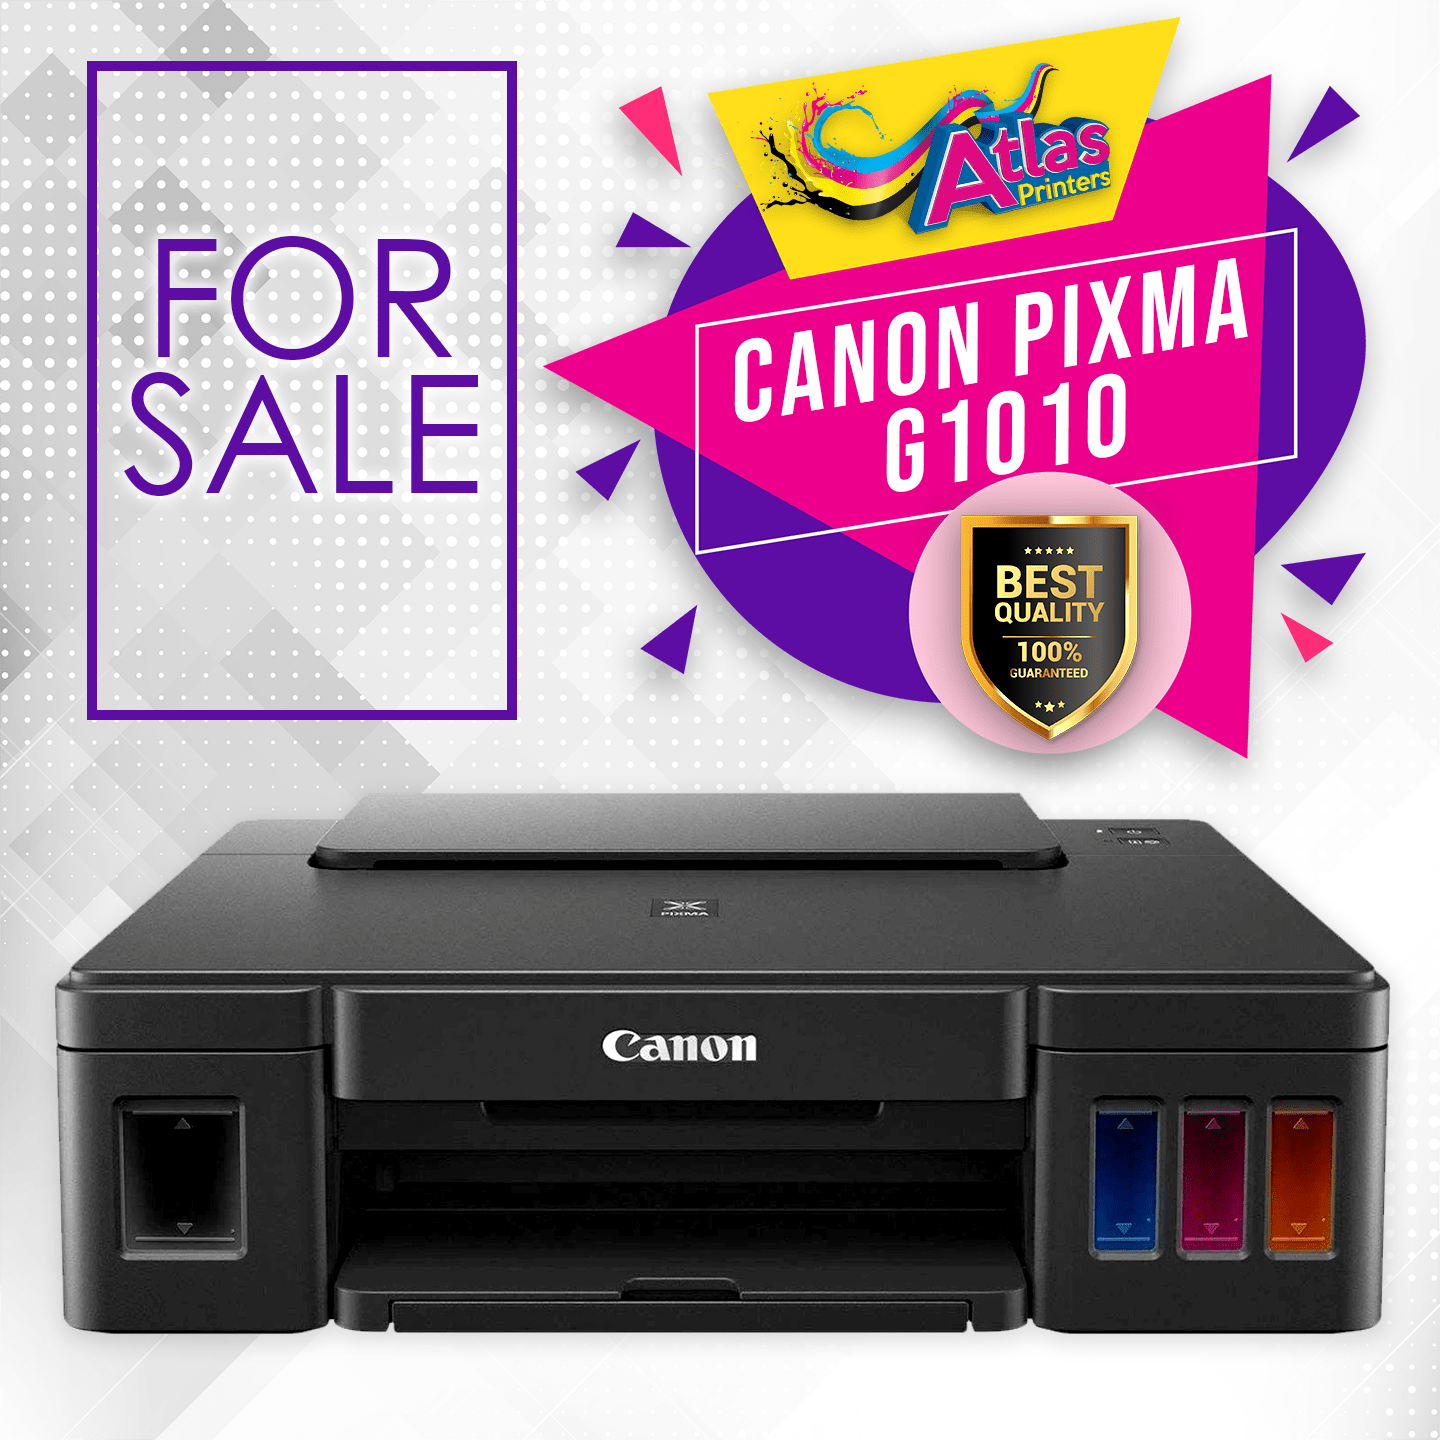 Canon Pixma G1010 Printer Lazada Ph